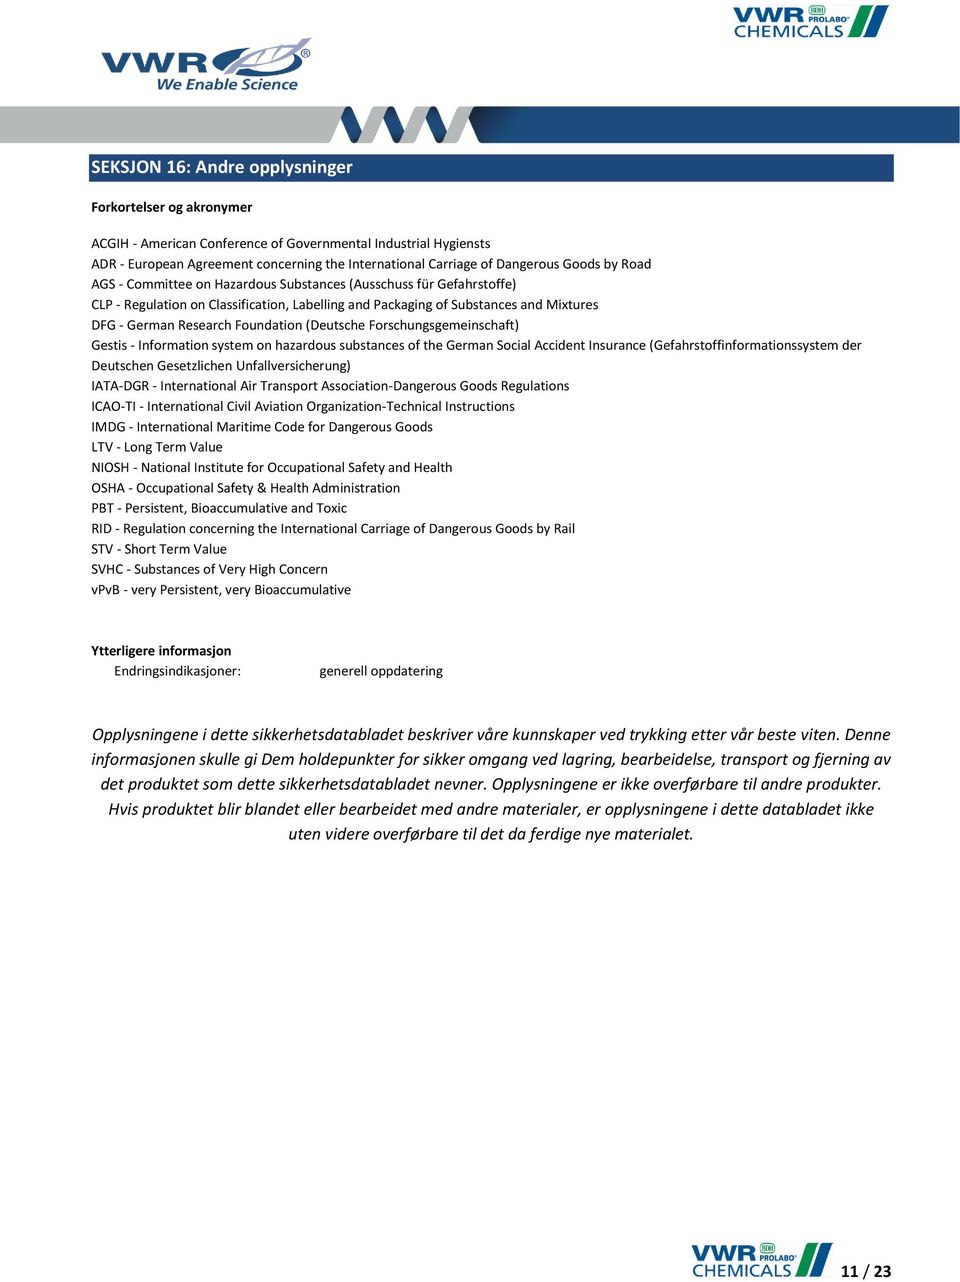 Foundation (Deutsche Forschungsgemeinschaft) Gestis - Information system on hazardous substances of the German Social Accident Insurance (Gefahrstoffinformationssystem der Deutschen Gesetzlichen